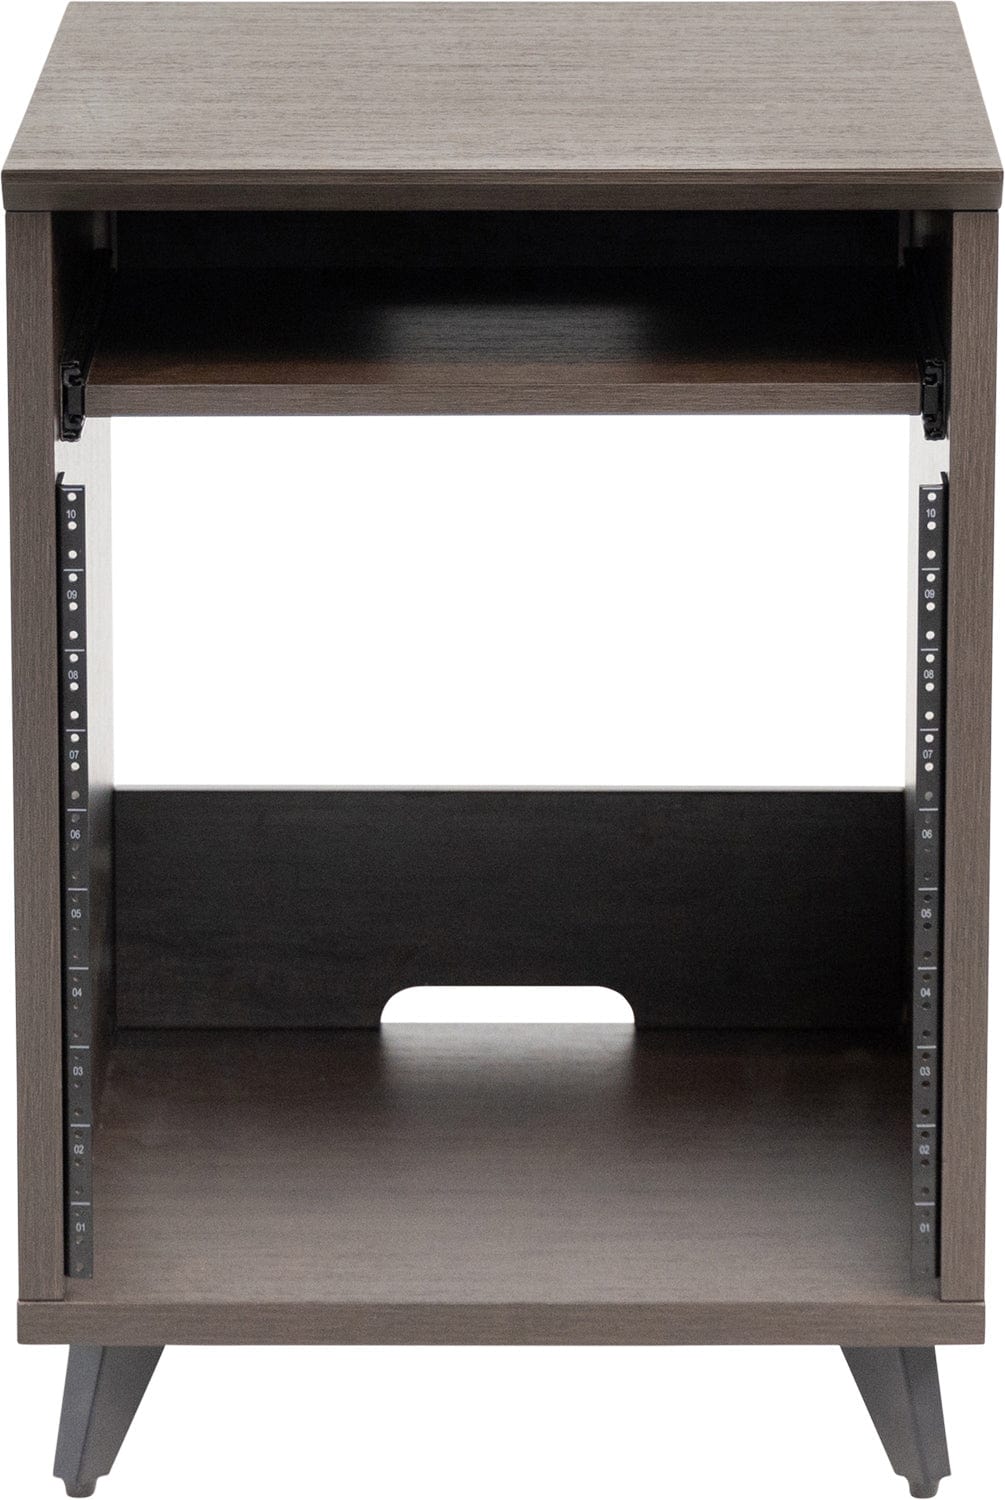 Gator GFW-ELITEDESKRK-B Elite Furniture 10U Rack Table Dark Walnut - PSSL ProSound and Stage Lighting